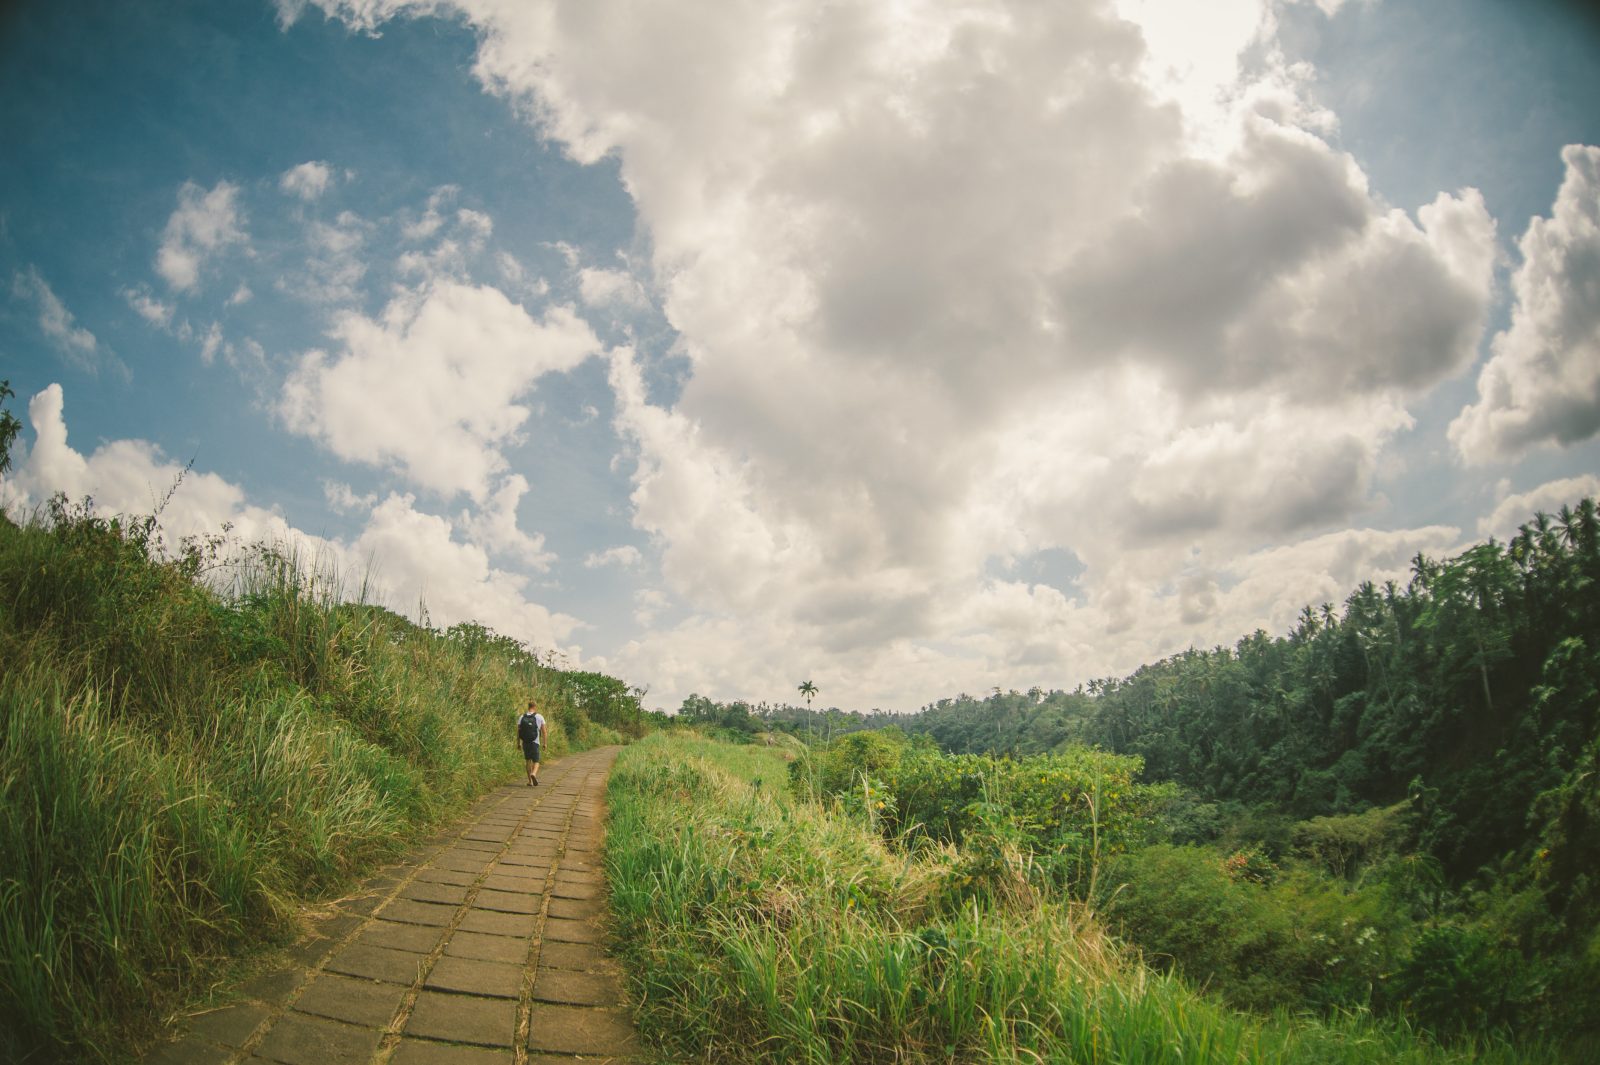 Places to visit in Bali - Campuhan Ridge Walk